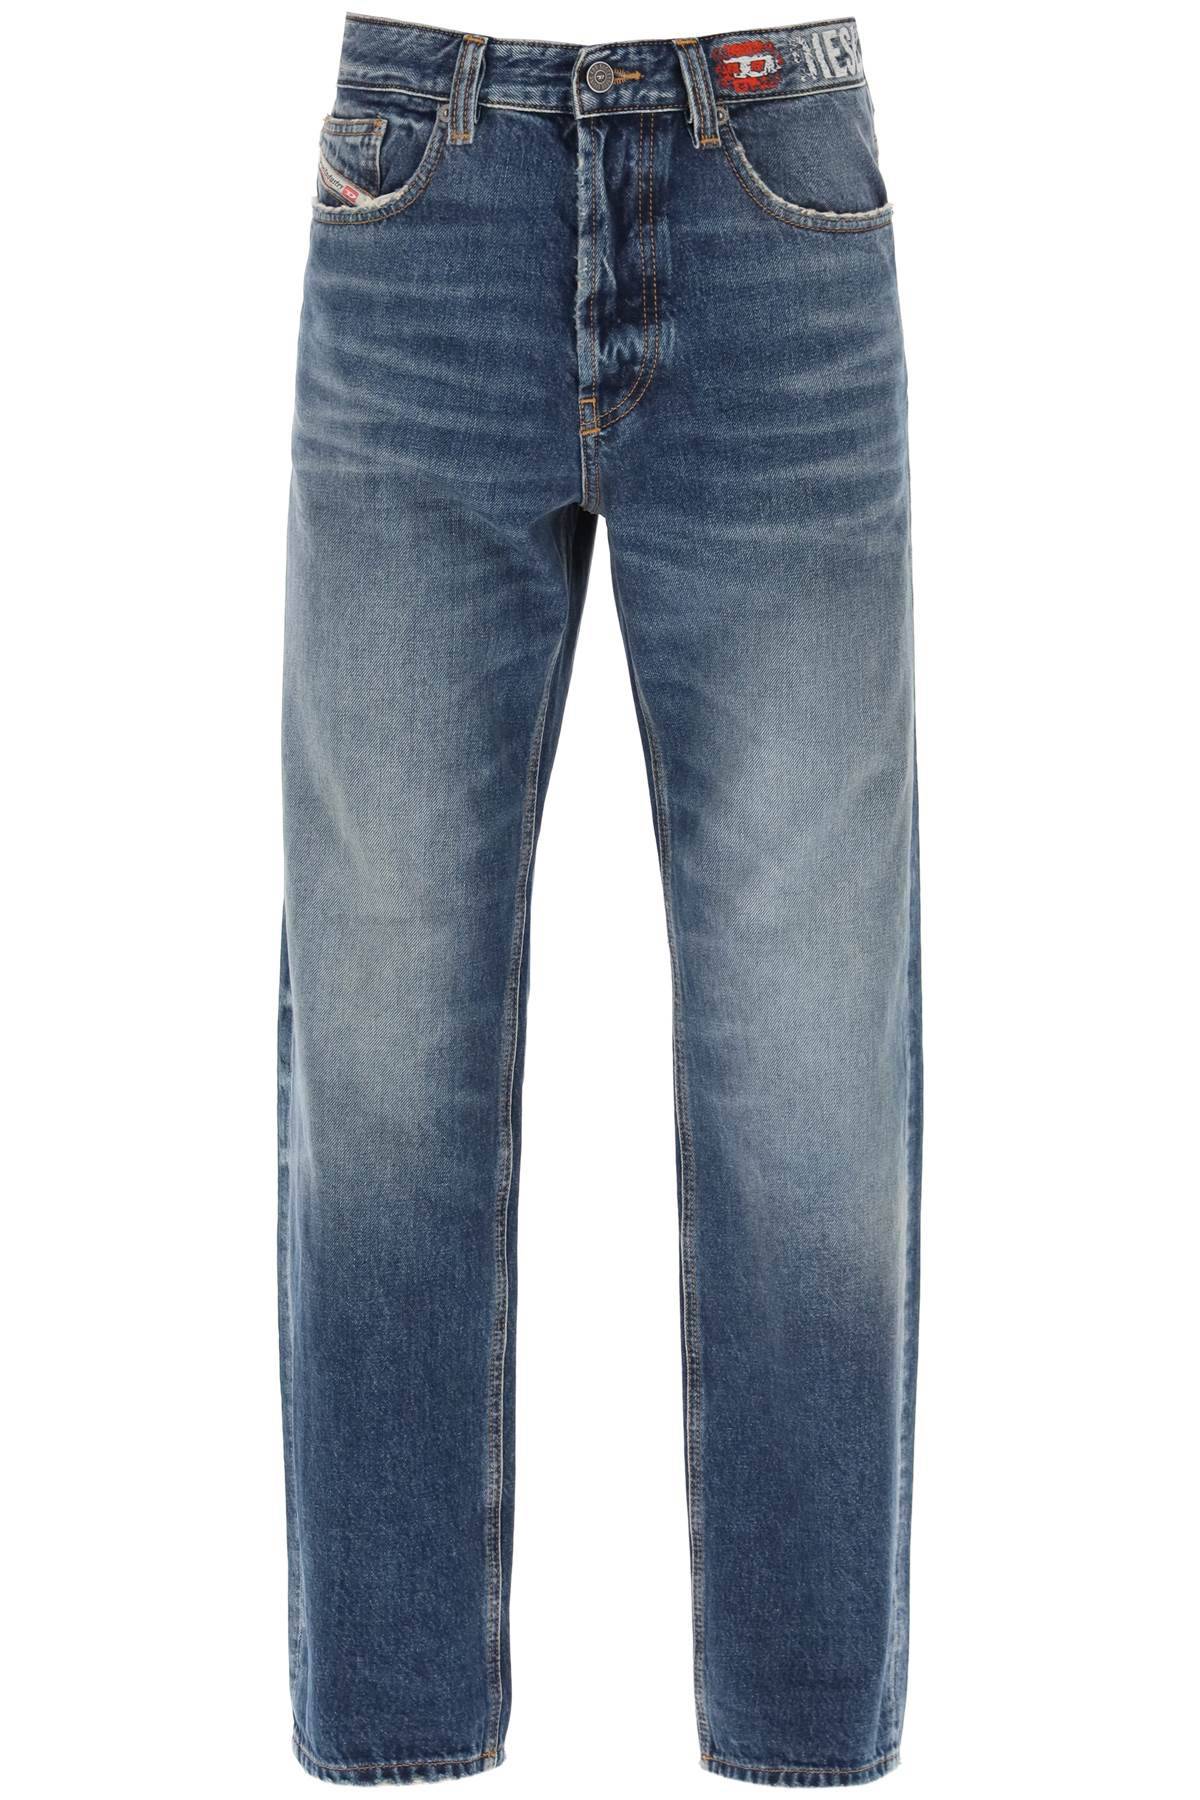 Diesel DIESEL 'd-macs' loose jeans with straight cut